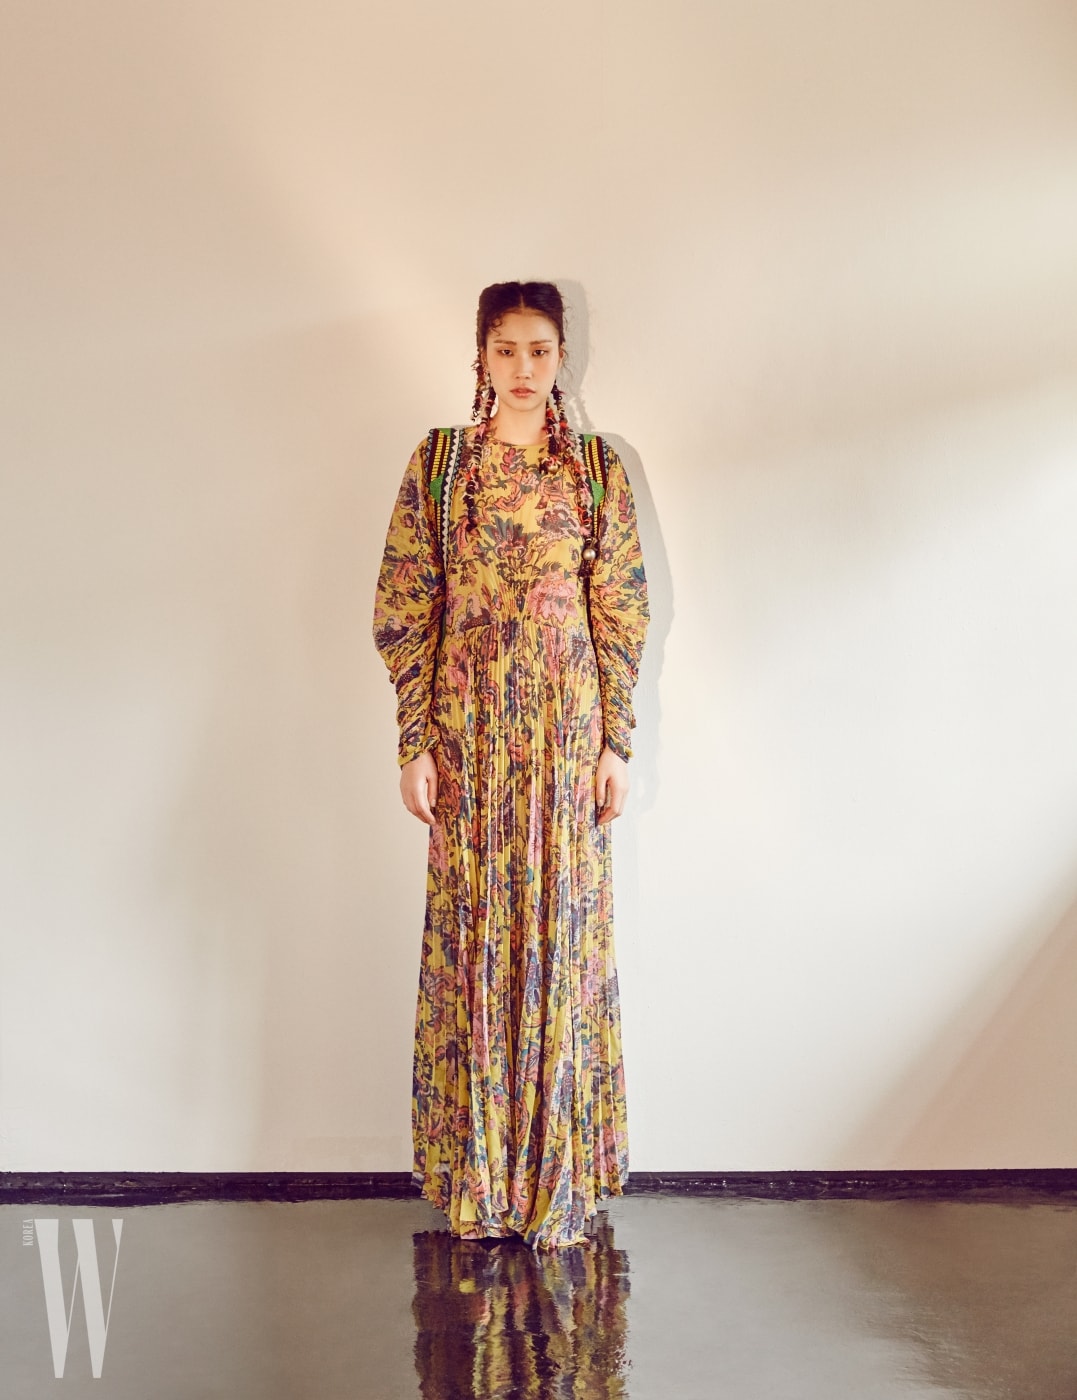 볼륨감 넘치는 주름 장식 페이즐리 롱 드레스, 민속적인 패턴이 돋보이는 배낭 끈 모티프의 액세서리는 Etro 제품.